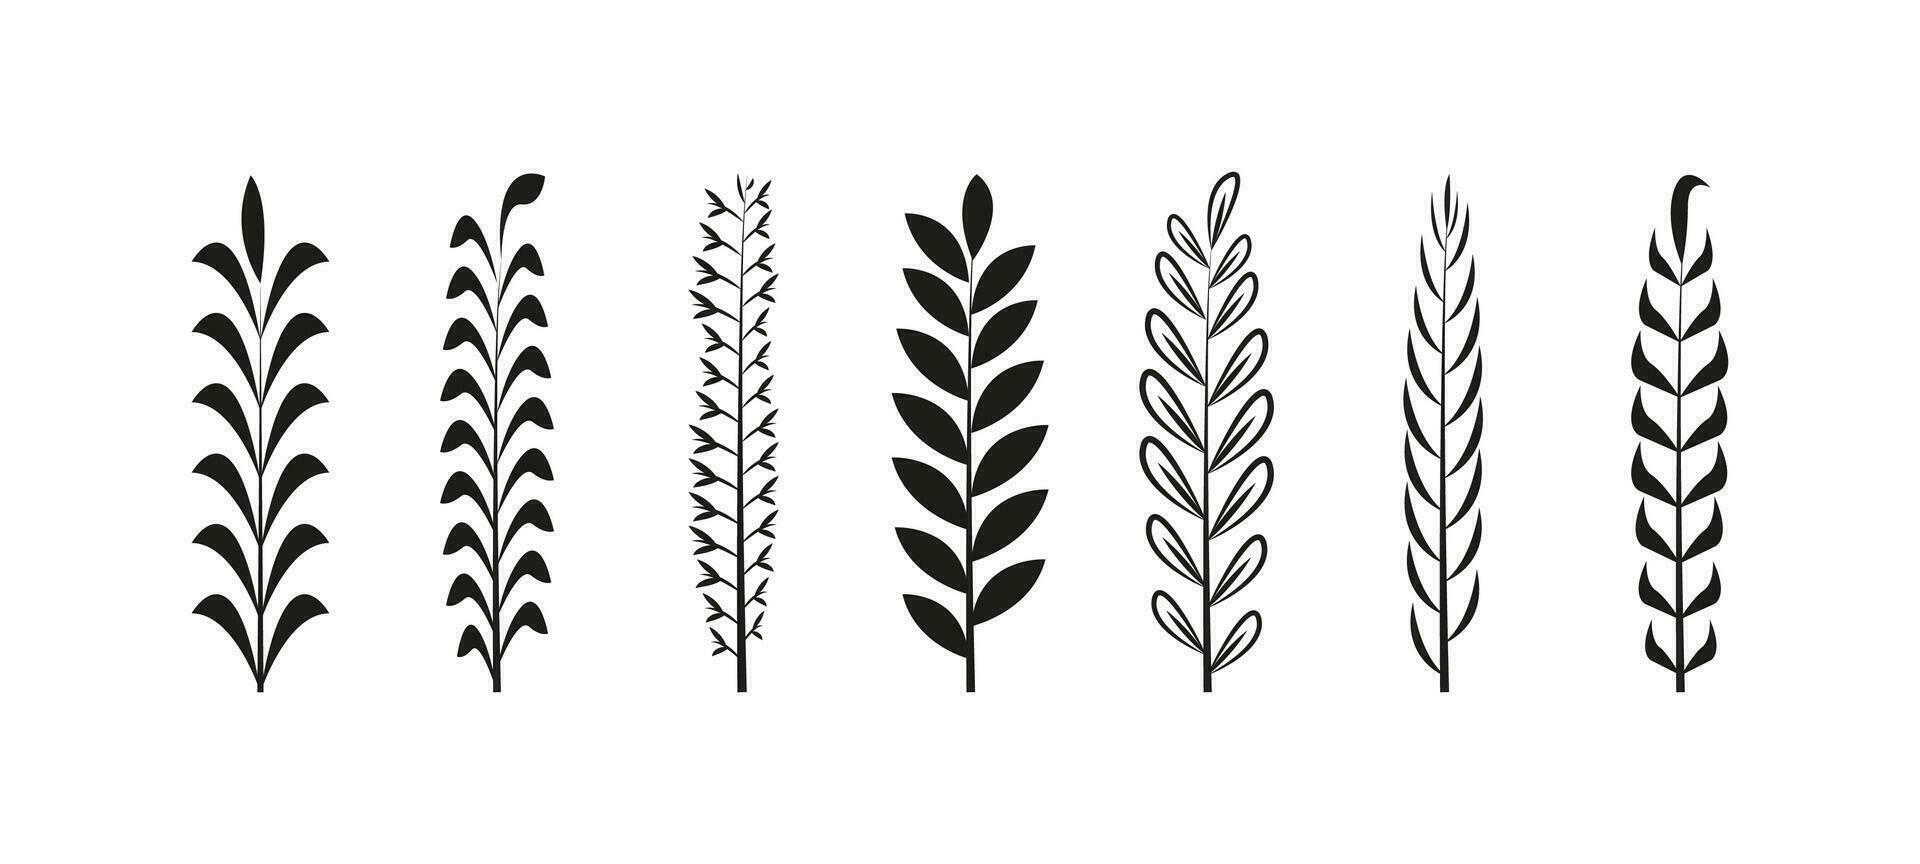 plantas bosquejo, genial diseño para ninguna propósitos. conjunto de mano dibujado flores, hojas y ramas vector